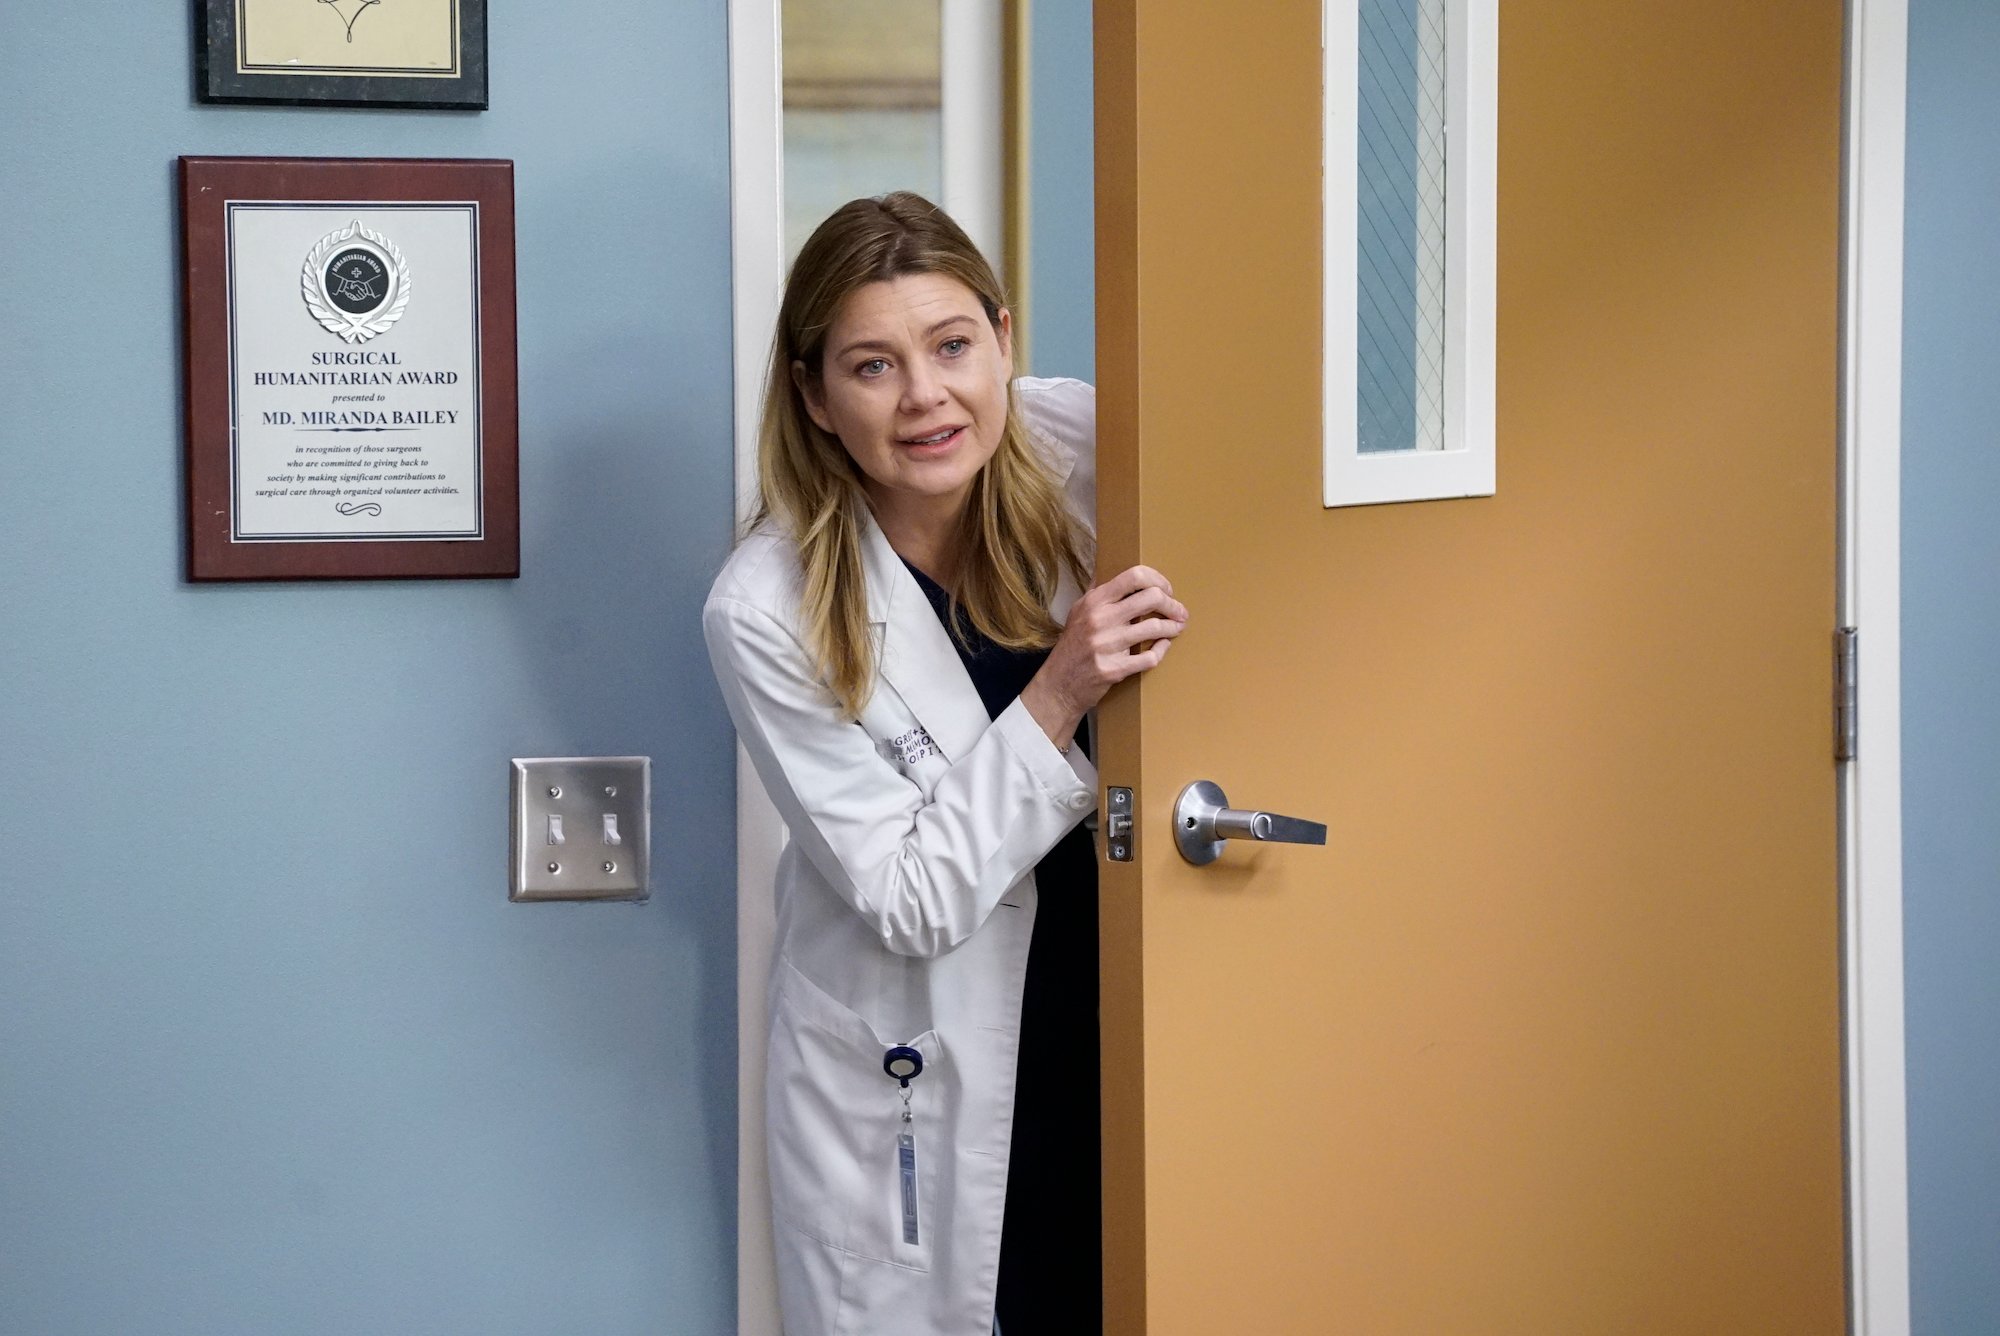 ELLEN POMPEO, as Meredith Grey, opens a door.